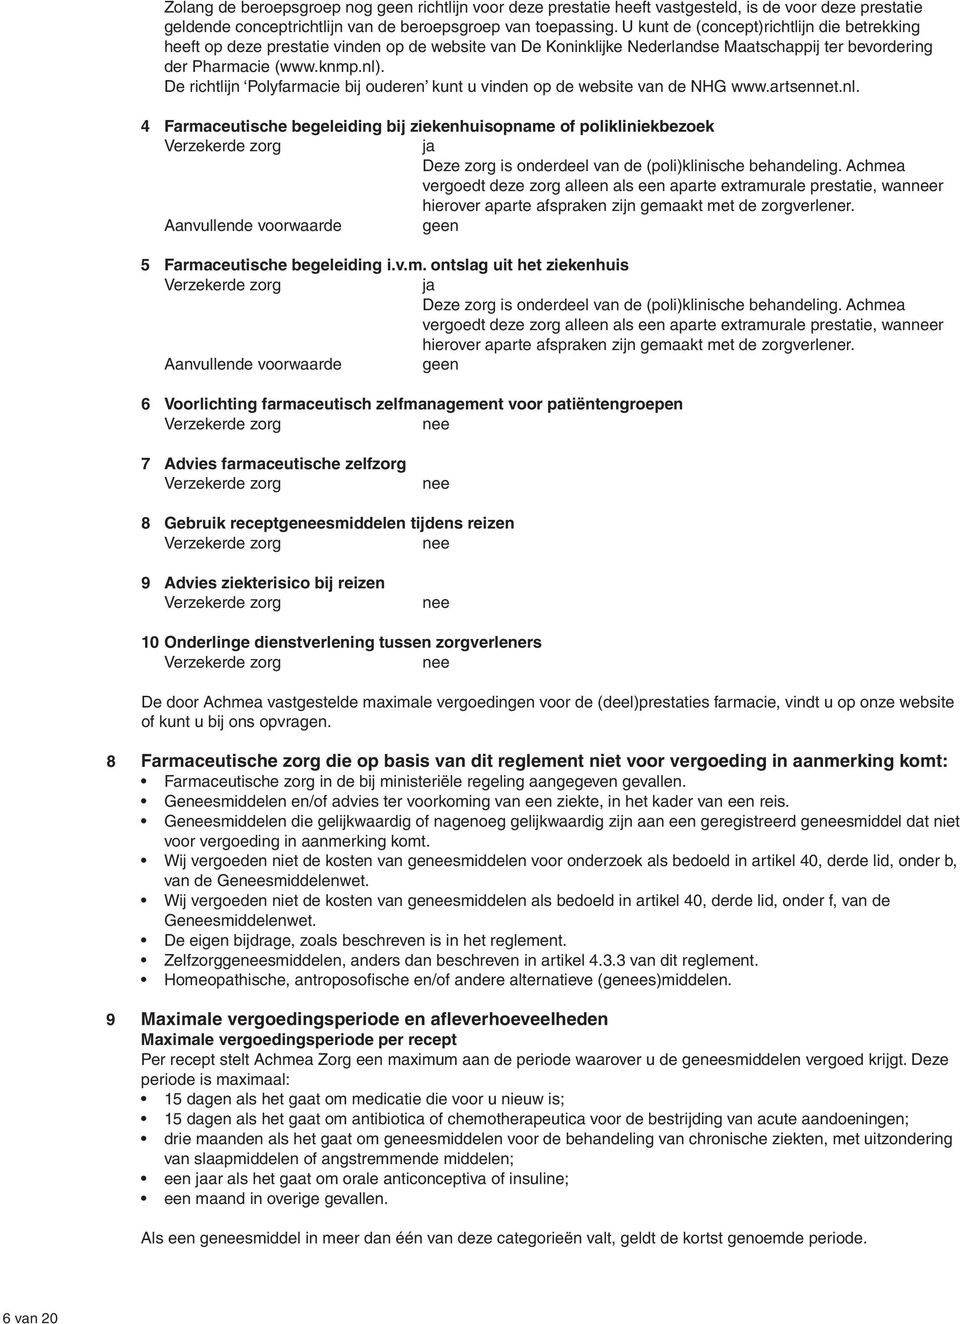 De richtlijn Polyfarmacie bij ouderen kunt u vinden op de website van de NHG www.artsennet.nl.